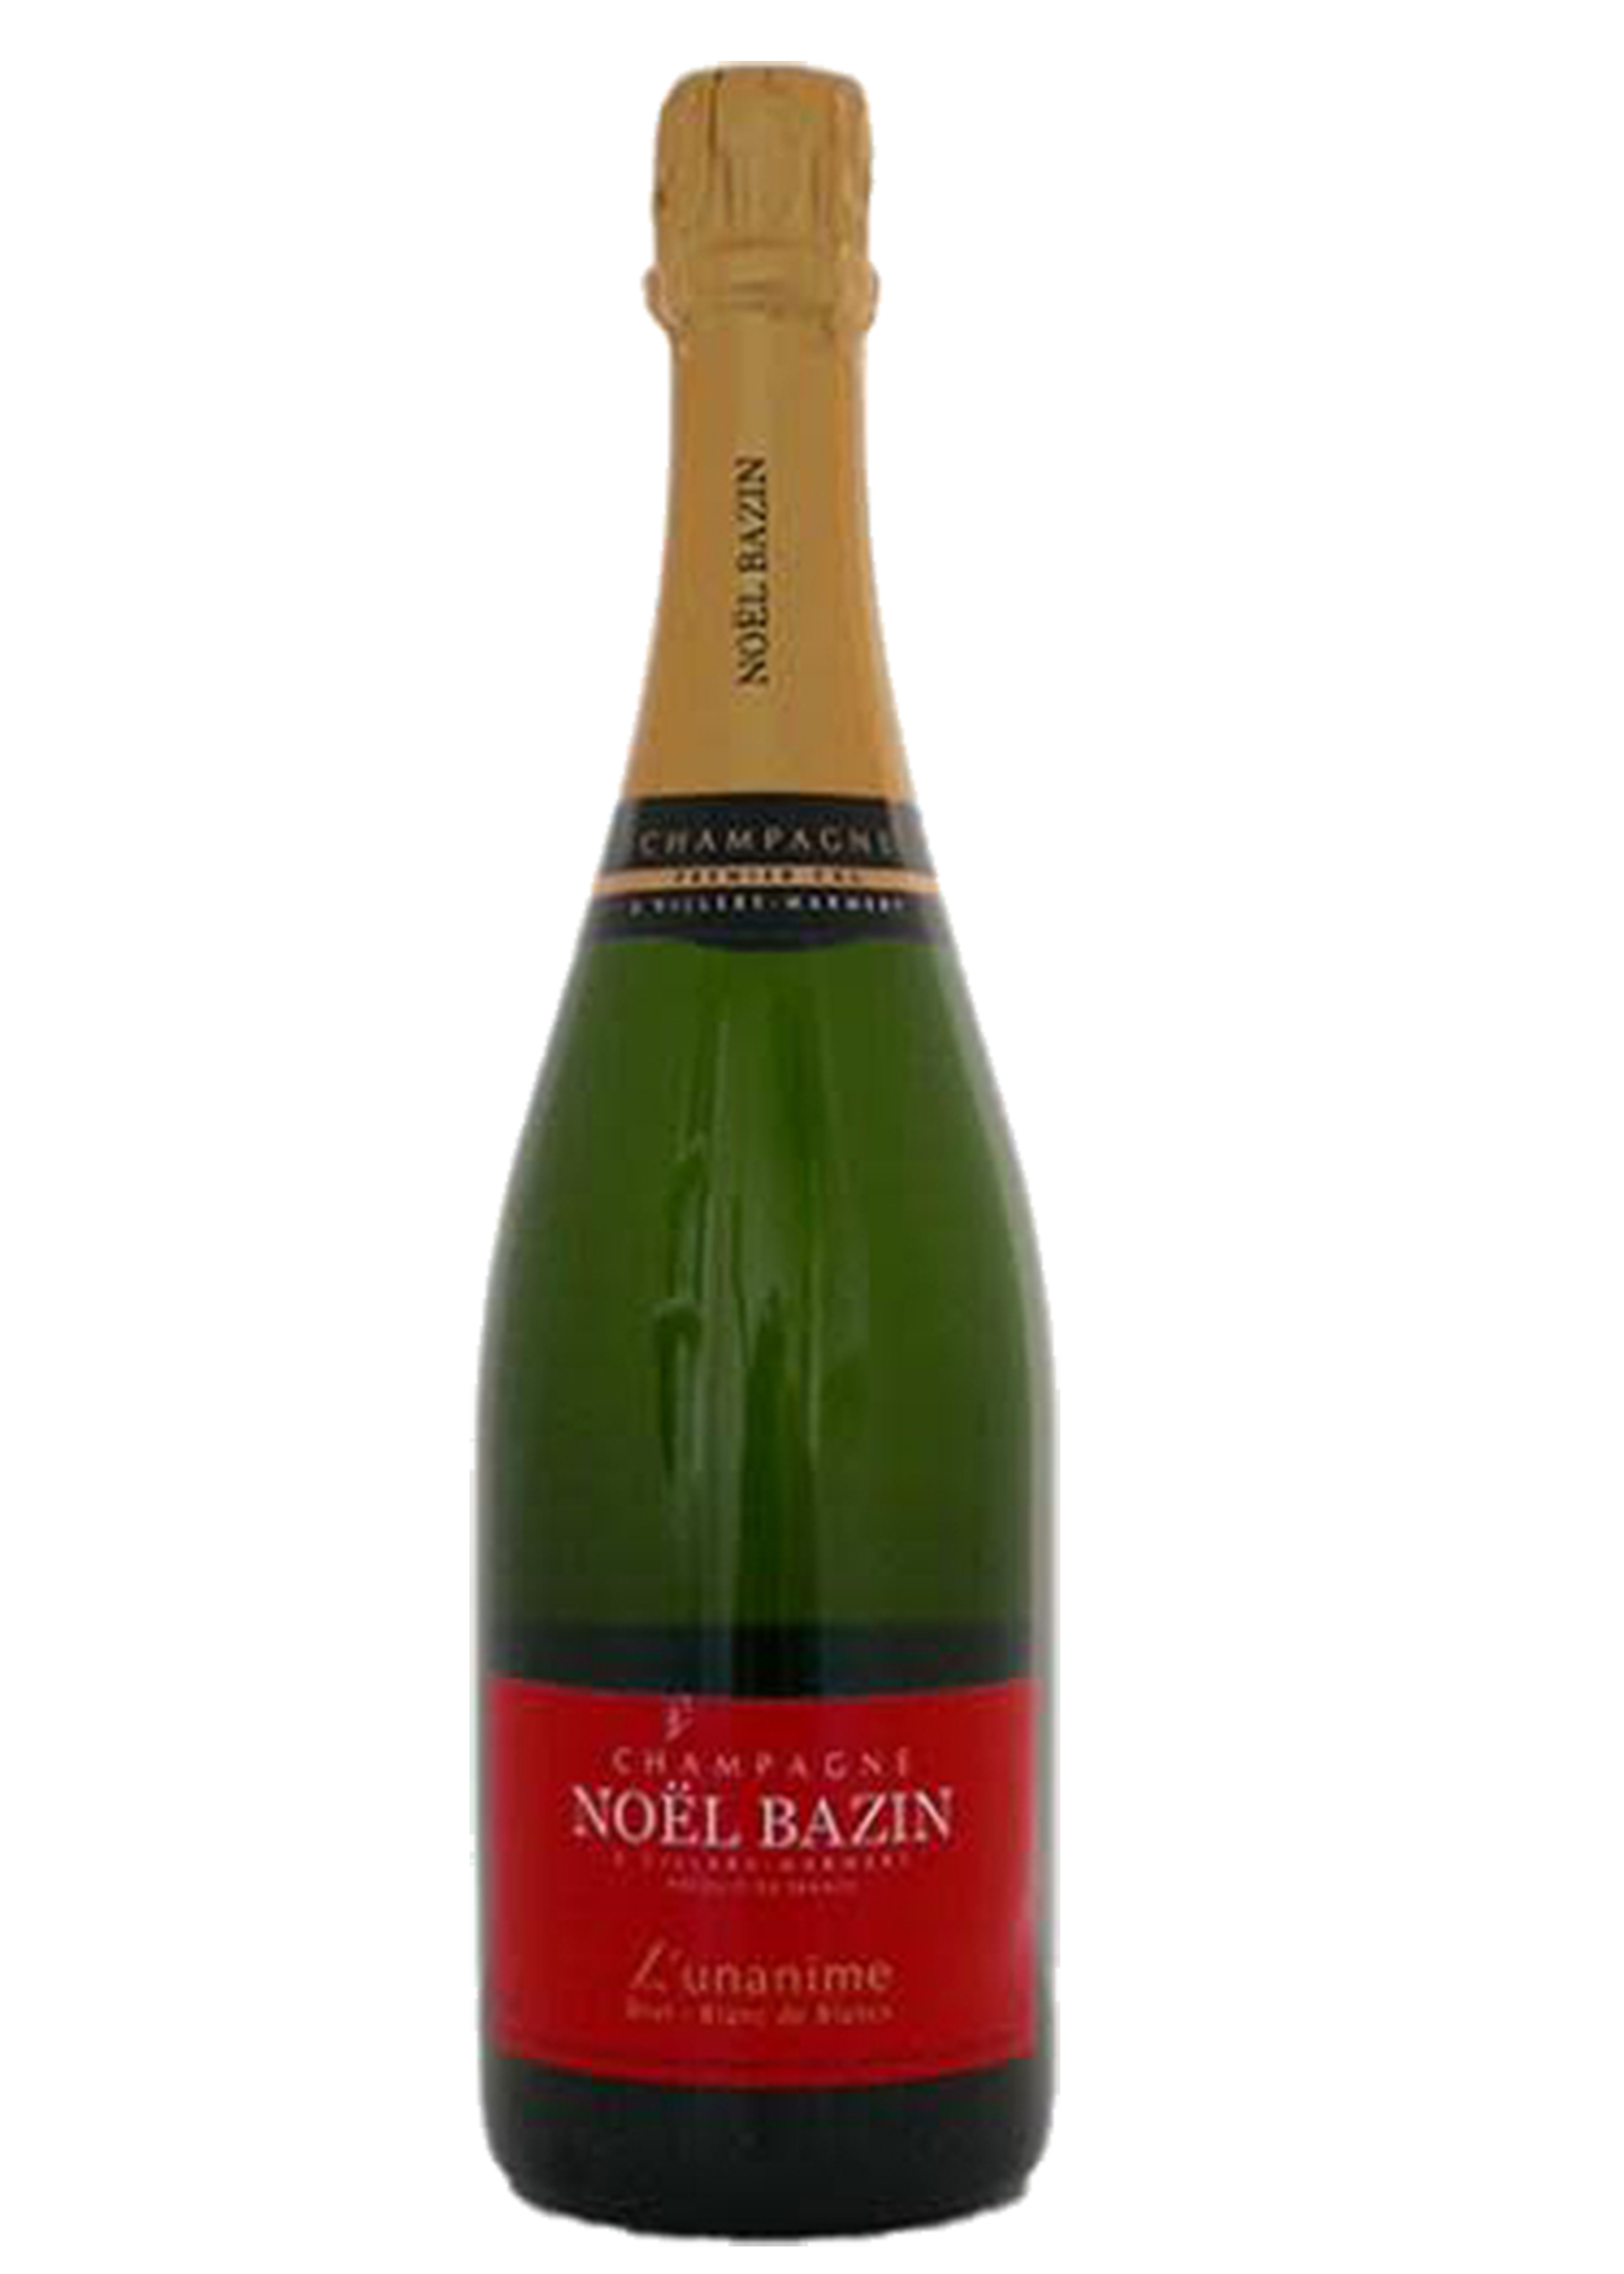 Champagne Noël Bazin Champagne Noël Bazin / Blanc de Blancs Brut L'Unanime (NV) / 750mL